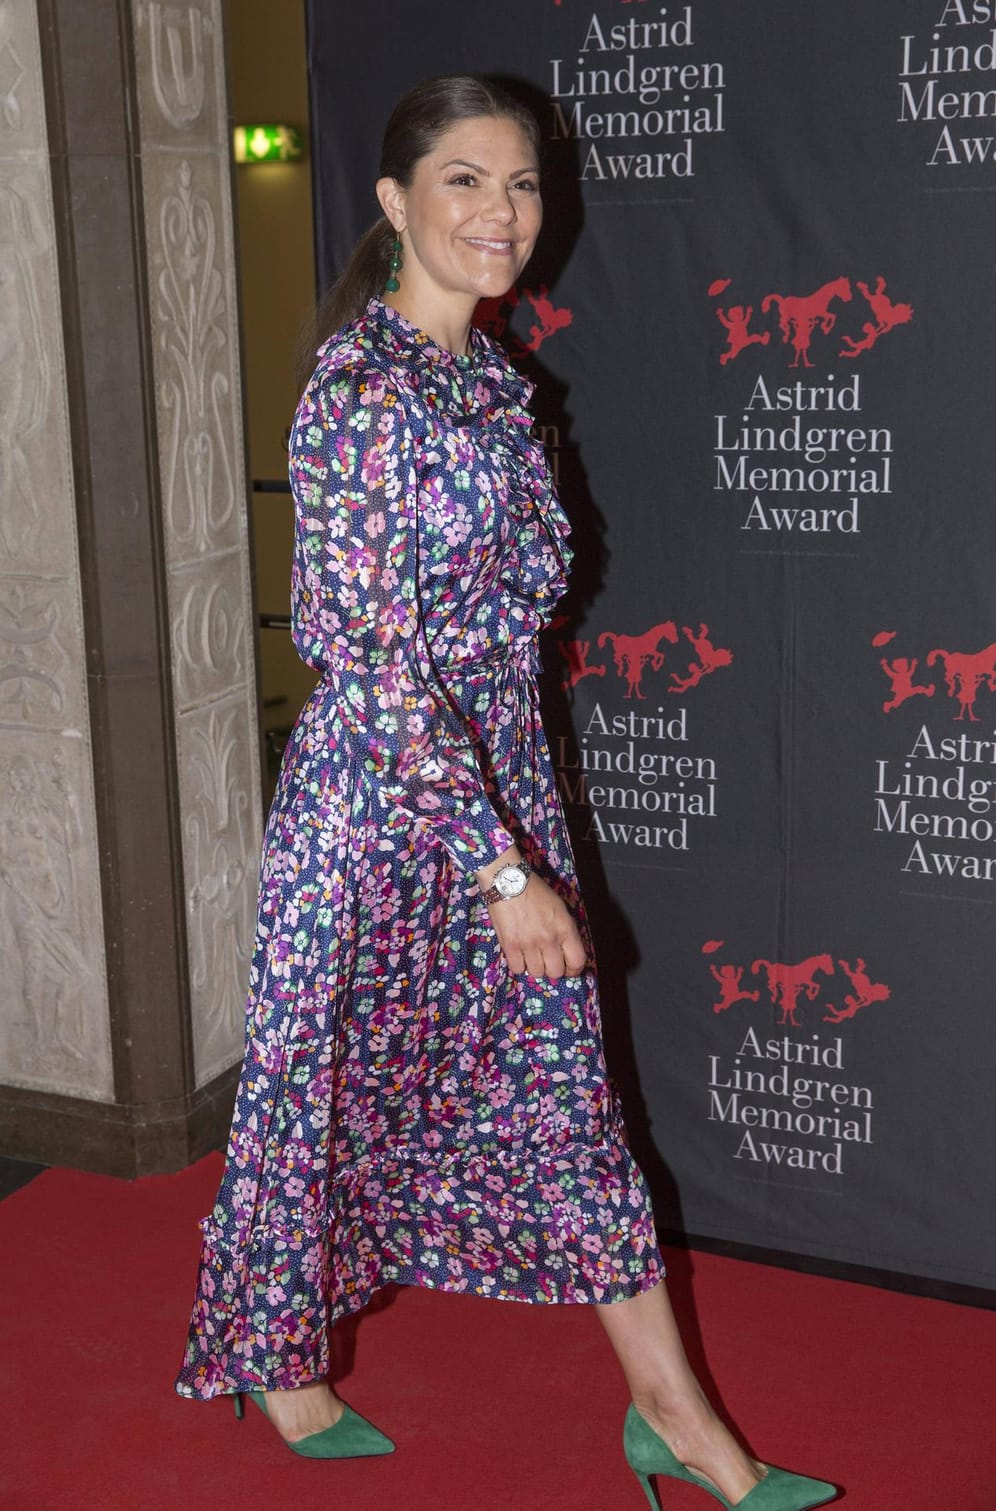 28. Mai 2018: Kronprinzessin Victoria trägt beim Astrid Lindgren Memorial Award in Stockholm ein Kleid von &other stories. Zu haben ist das gute Stück für 125 Euro.